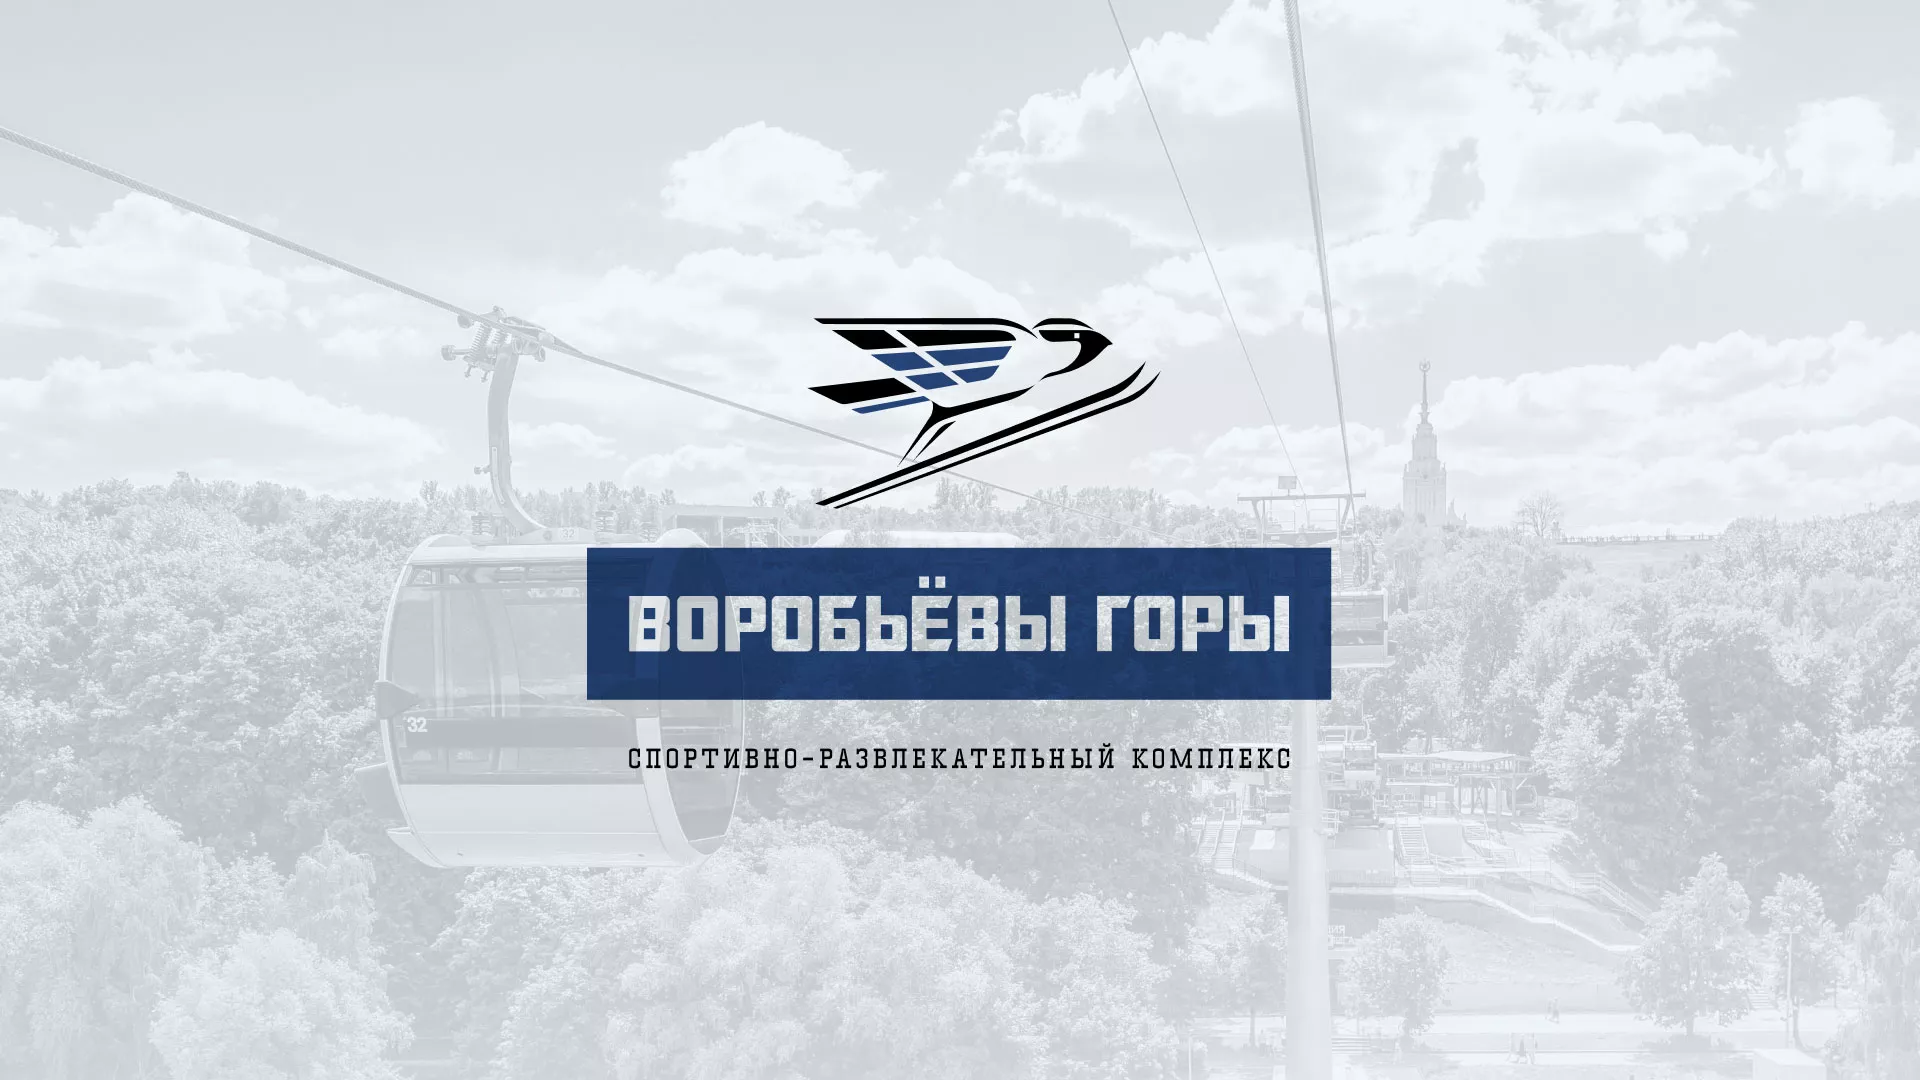 Разработка сайта в Волгореченске для спортивно-развлекательного комплекса «Воробьёвы горы»